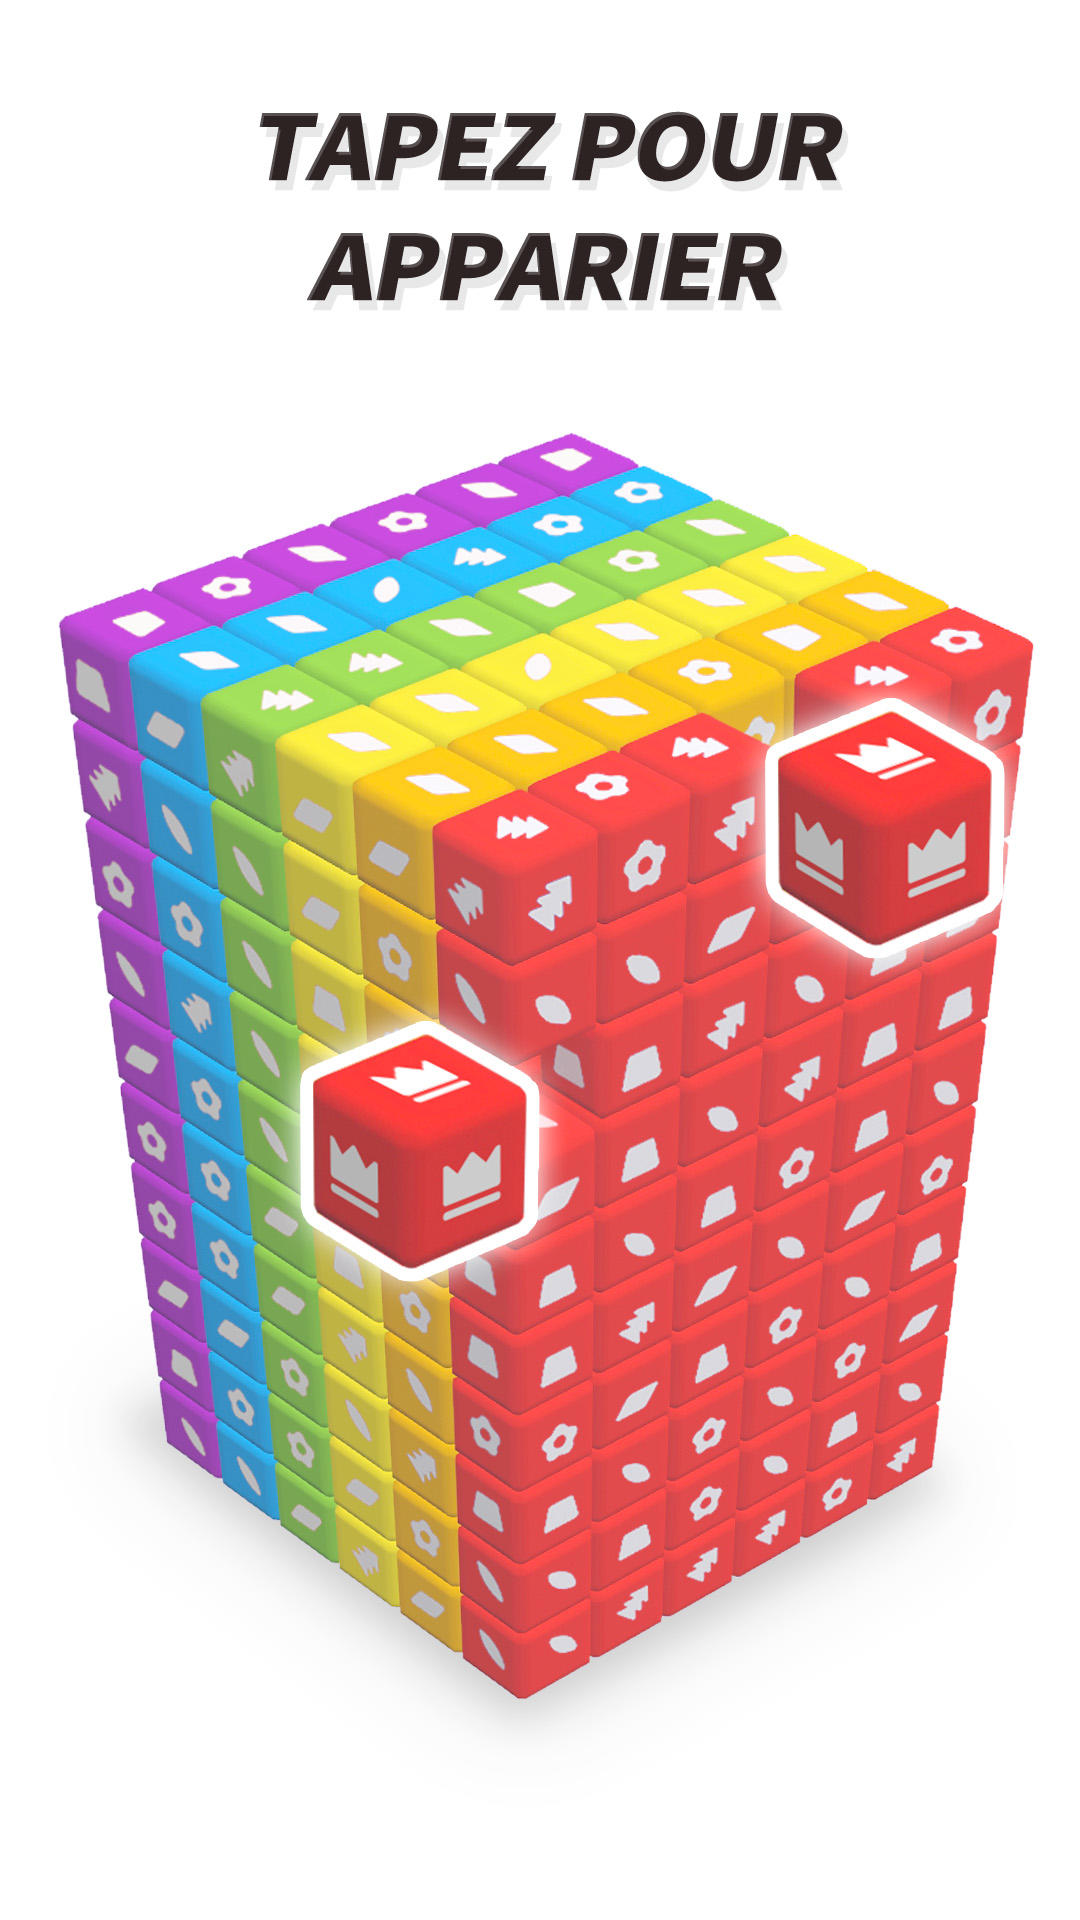 Débloquez Le Plaisir Avec Ce Cube De Puzzle Mobile Débloquez